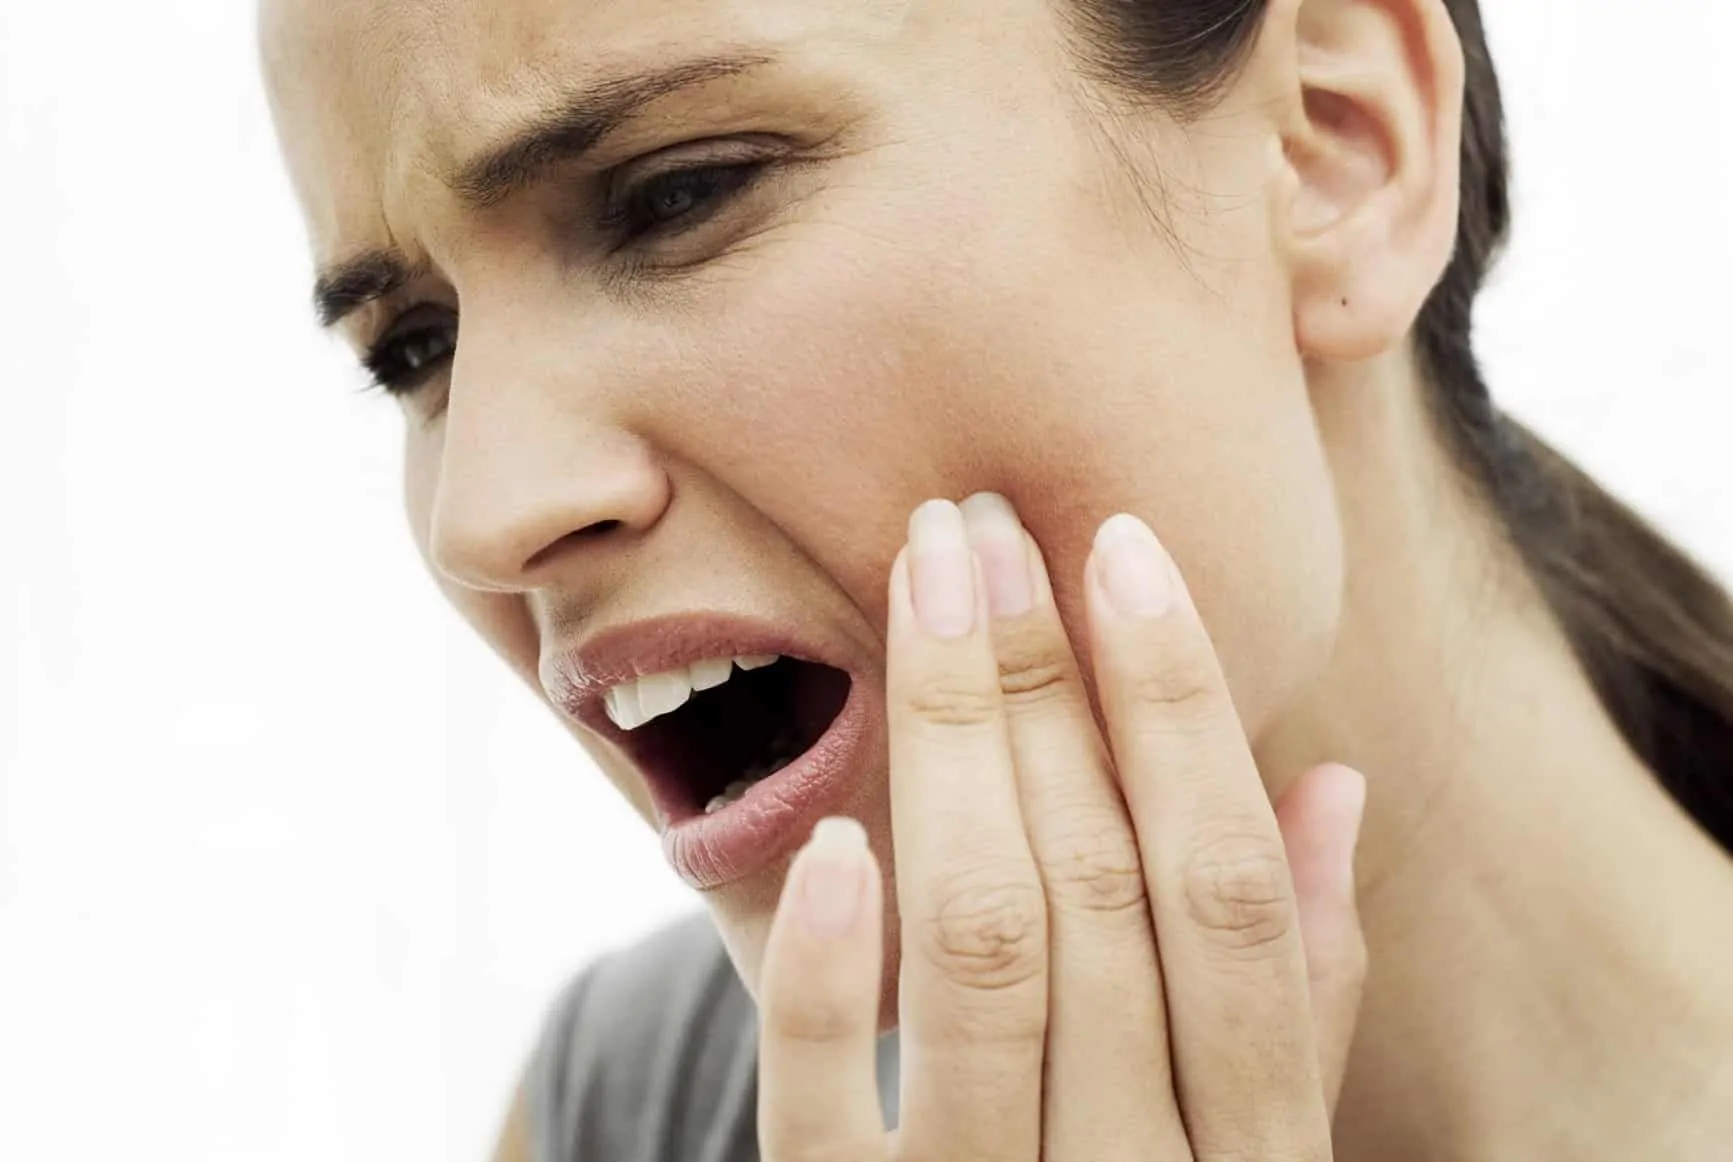 dis agrisina ne iyi gelir Diş ağrısına iyi gelen ve diş çürümesini önleyen öneriler!